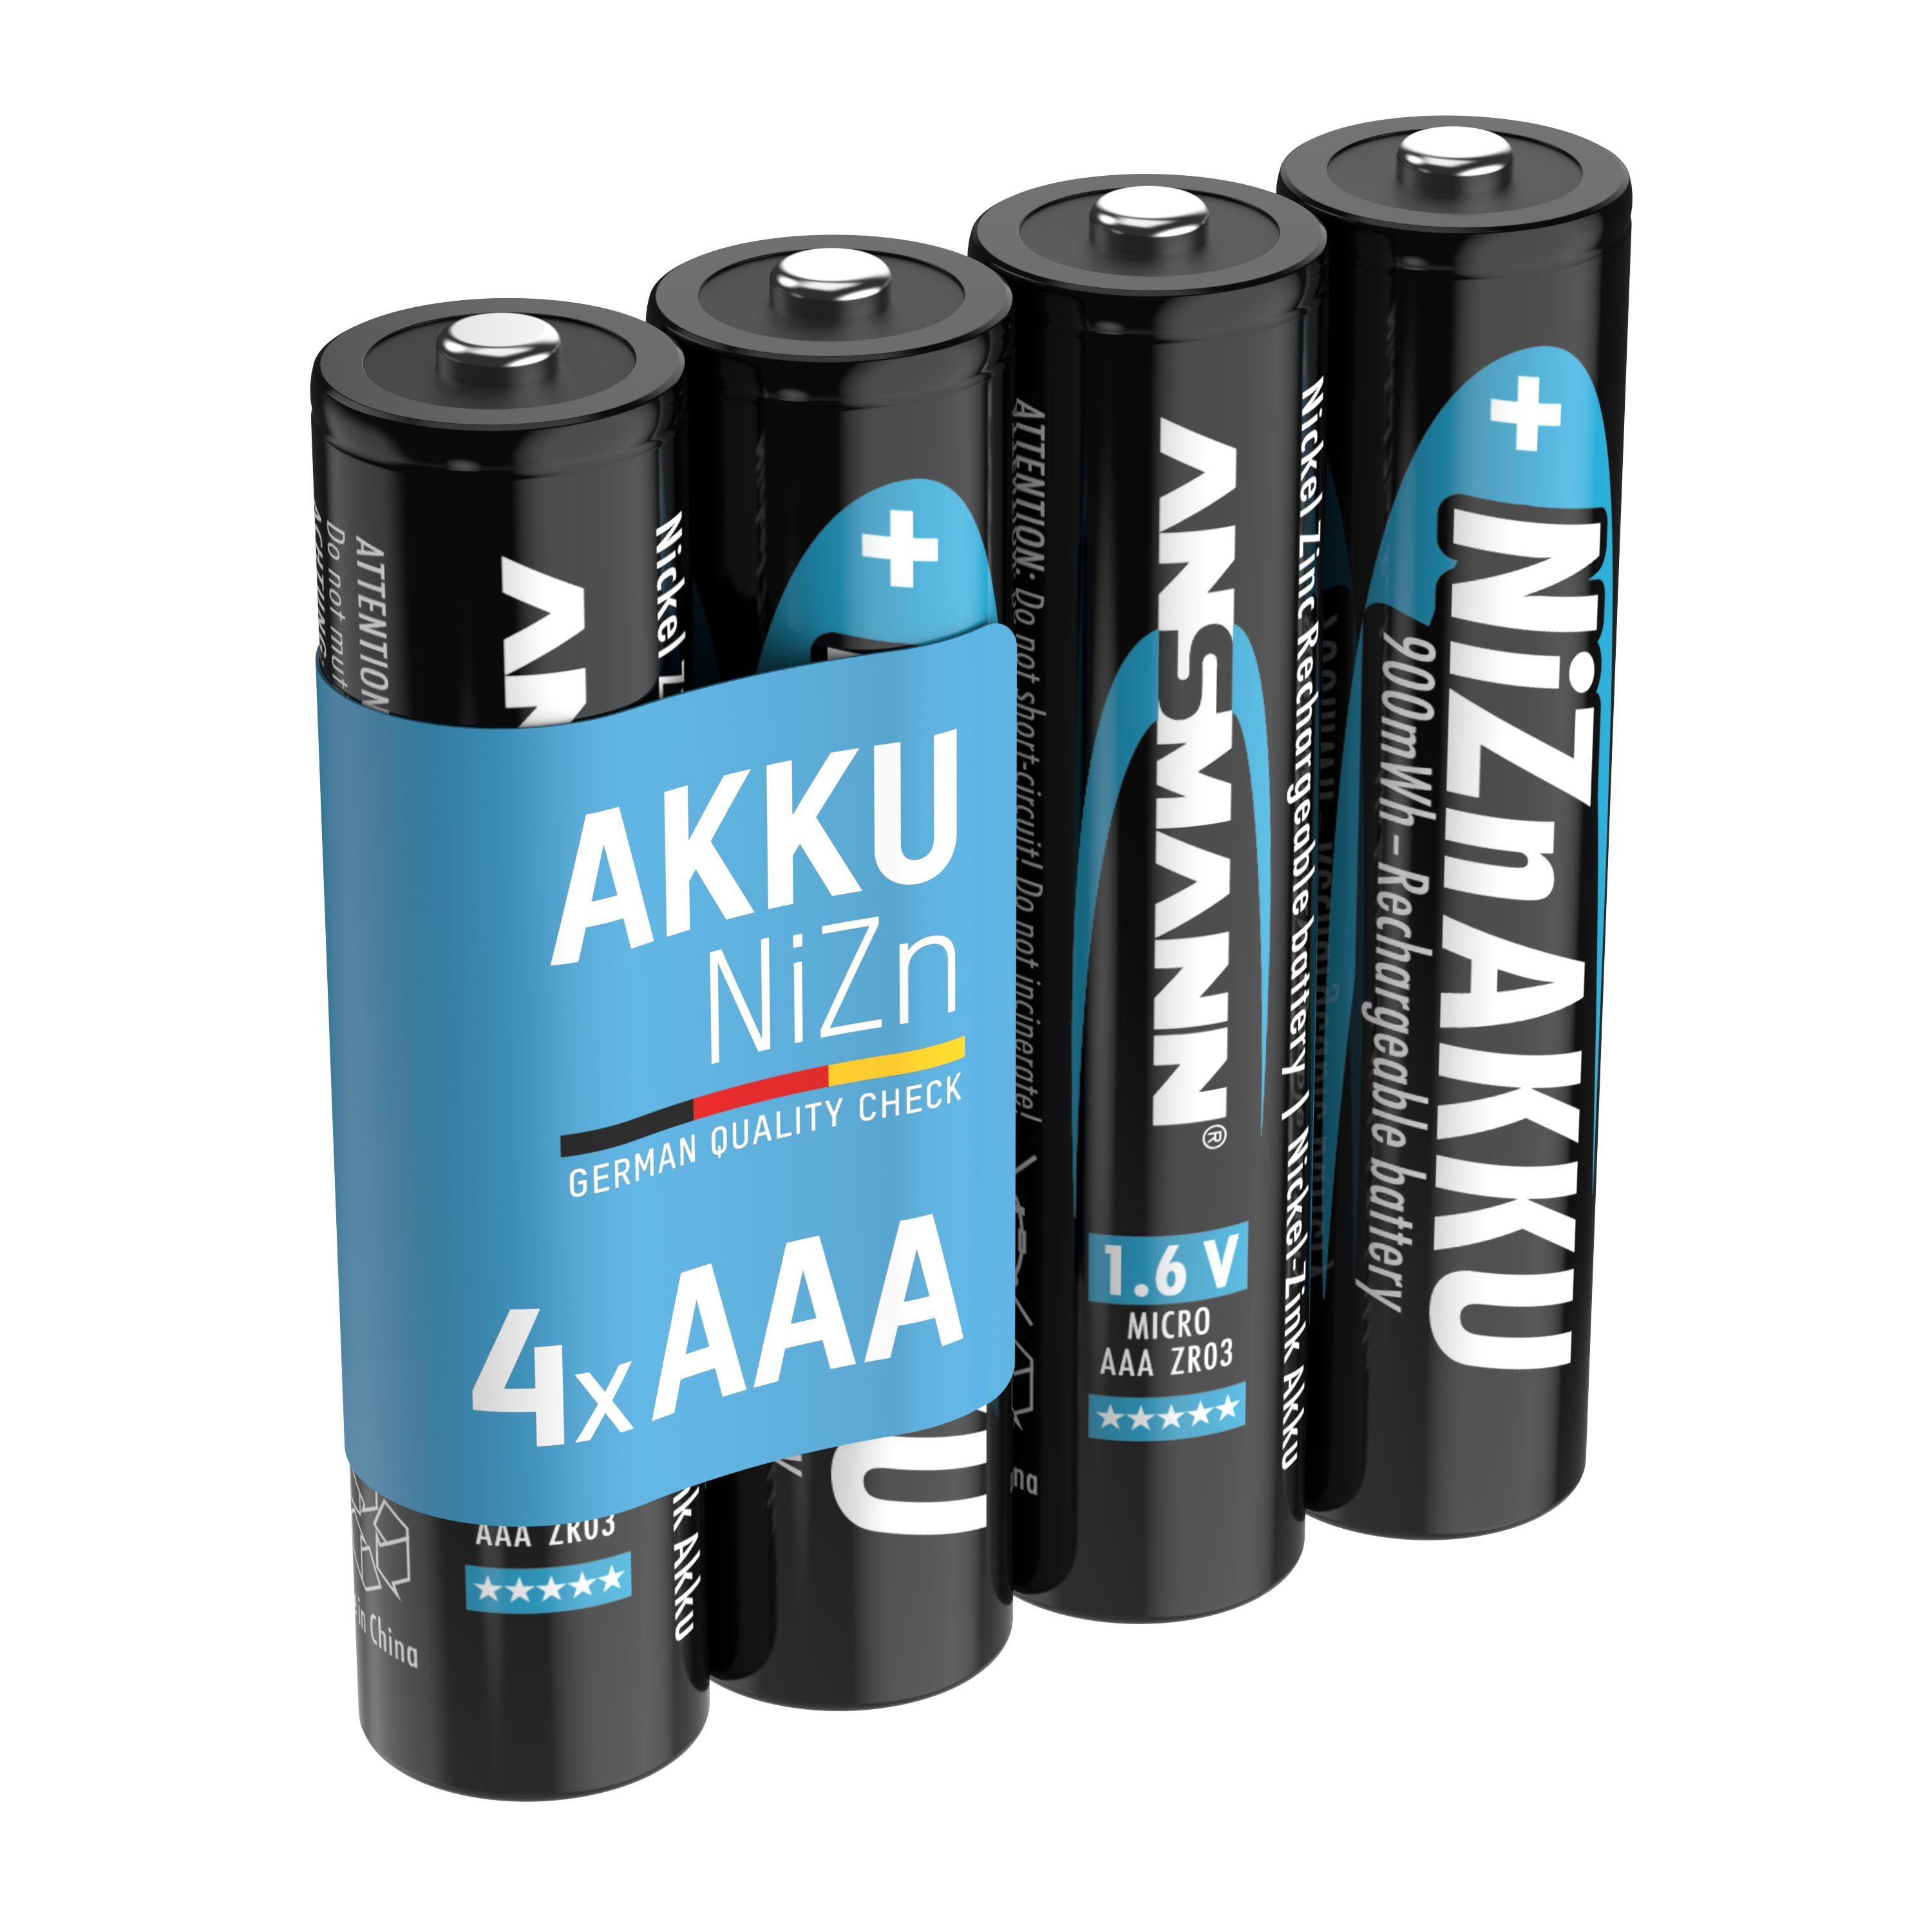 ANSMANN® Micro NiZn Akku AAA 1,6V 550mWh, wiederaufladbare Batterien - 4 Stück Akku 550 mAh (1.6 V)